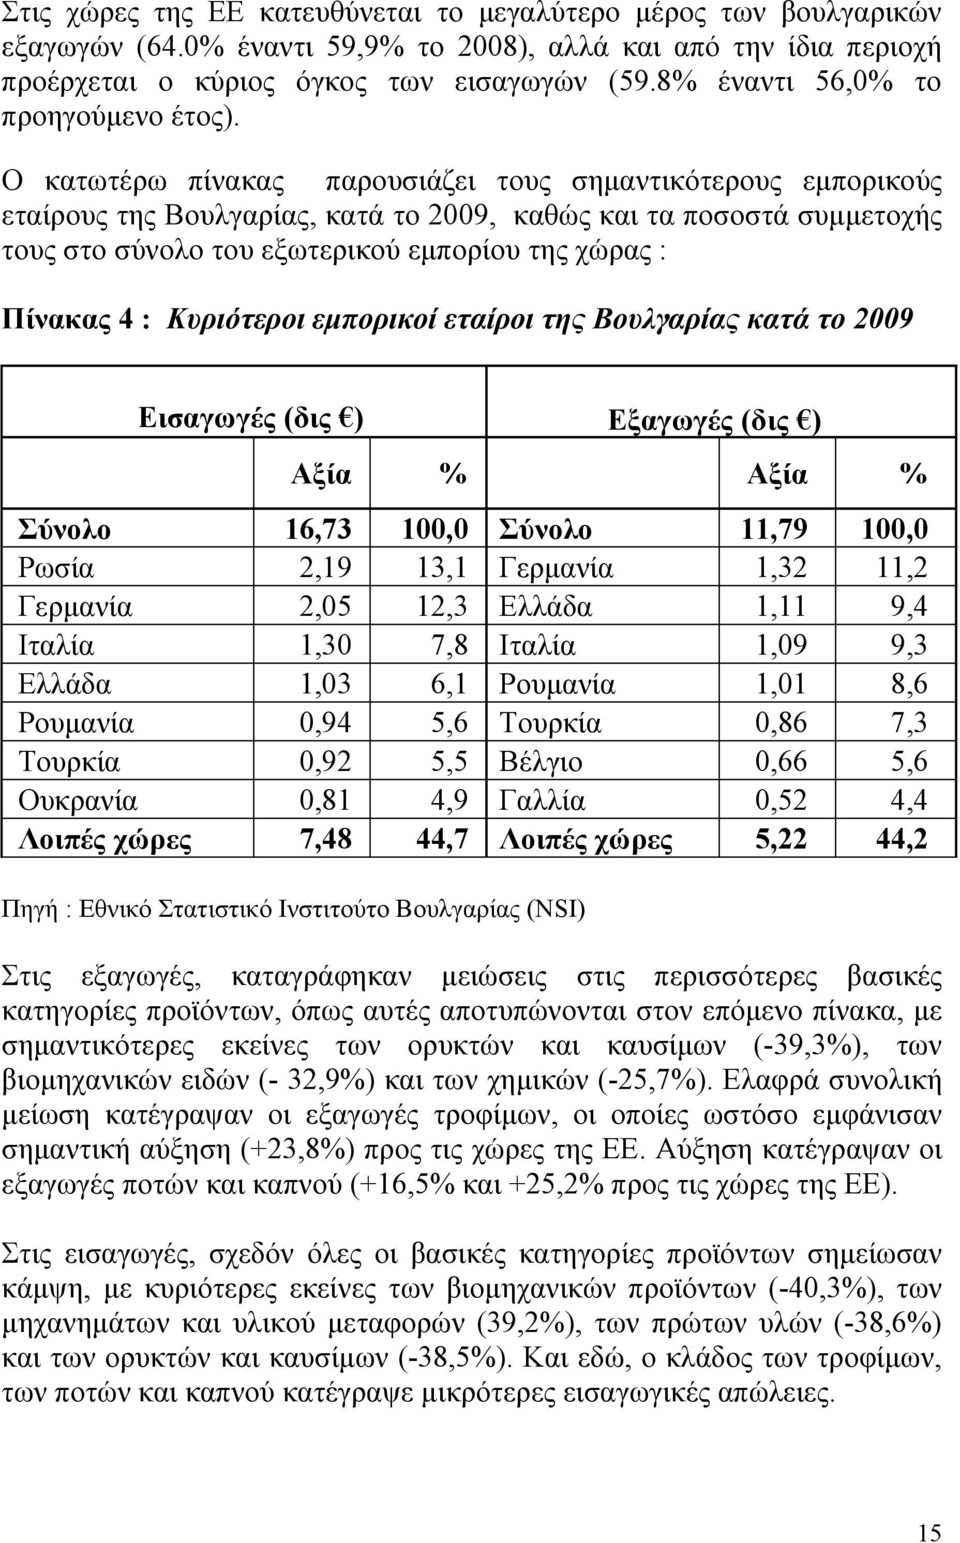 Ο κατωτέρω πίνακας παρουσιάζει τους σημαντικότερους εμπορικούς εταίρους της Βουλγαρίας, κατά το 2009, καθώς και τα ποσοστά συμμετοχής τους στο σύνολο του εξωτερικού εμπορίου της χώρας : Πίνακας 4 :